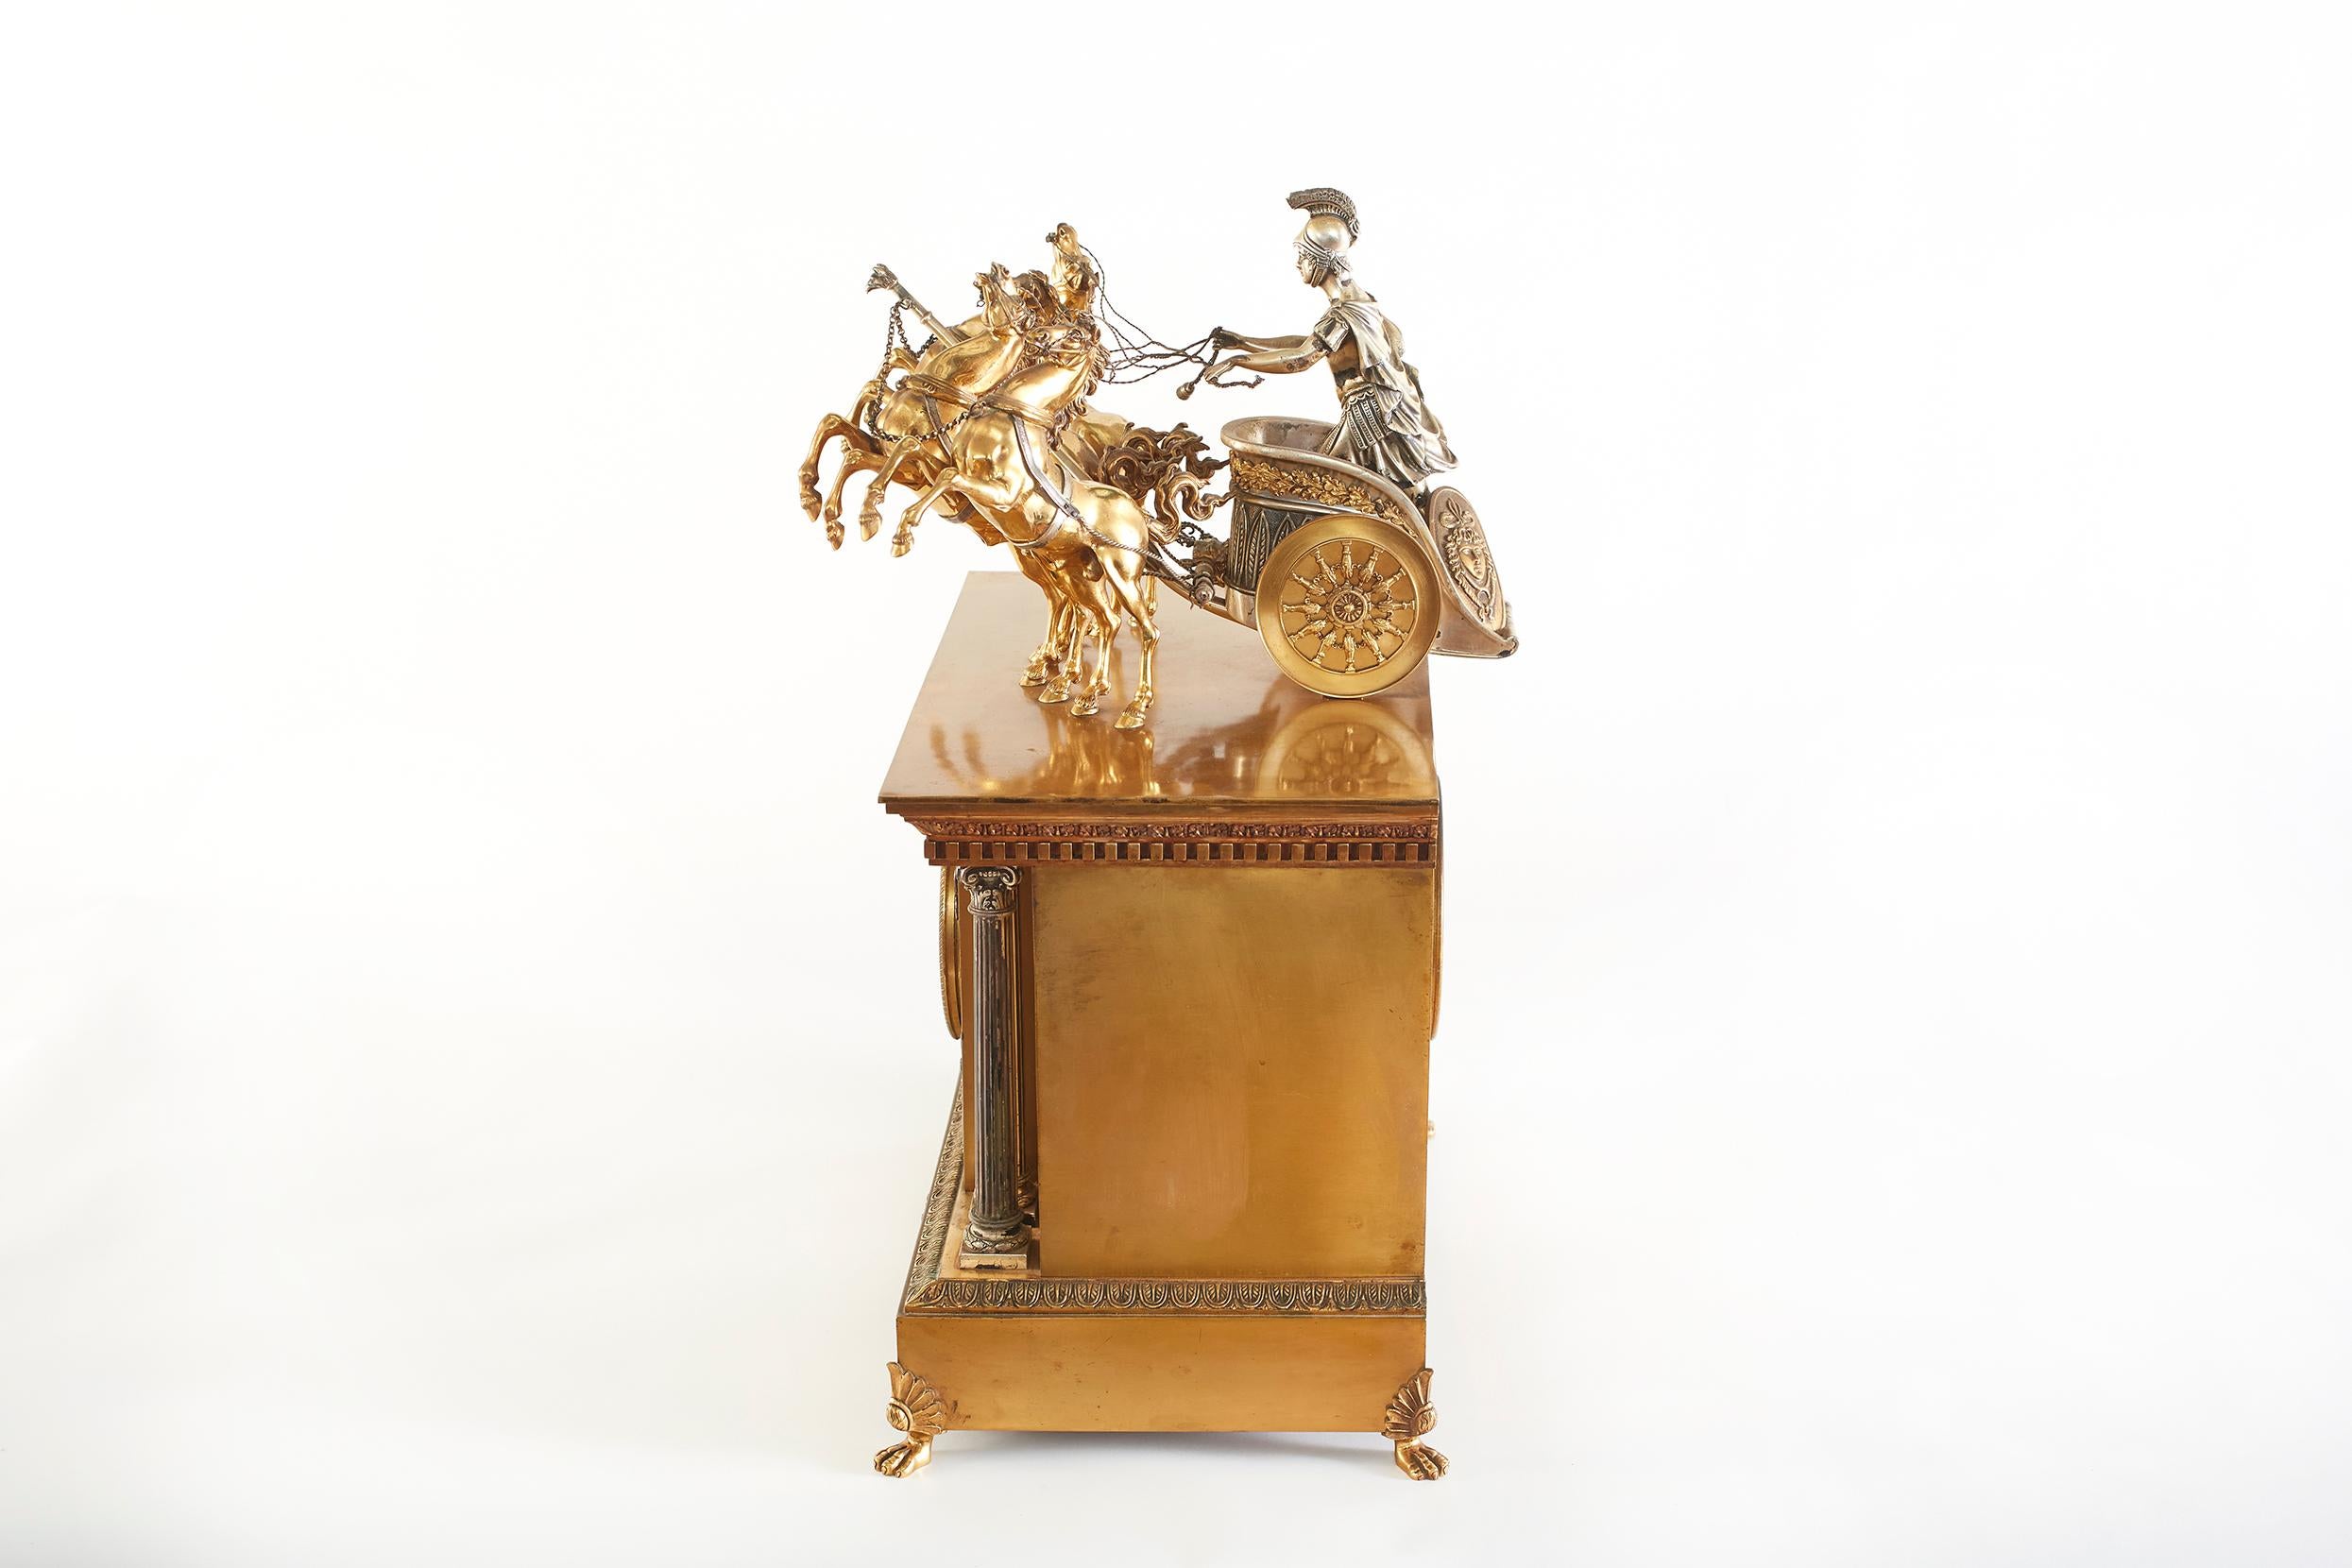 Grande horloge à char en bronze du 19e siècle, avec cadran en porcelaine de 5 pouces, aiguilles dorées et percées, et mouvement à ressort en laiton. L'horloge a une sonnerie de demi-heure sur un gong enroulé et un pendule d'origine avec des numéros